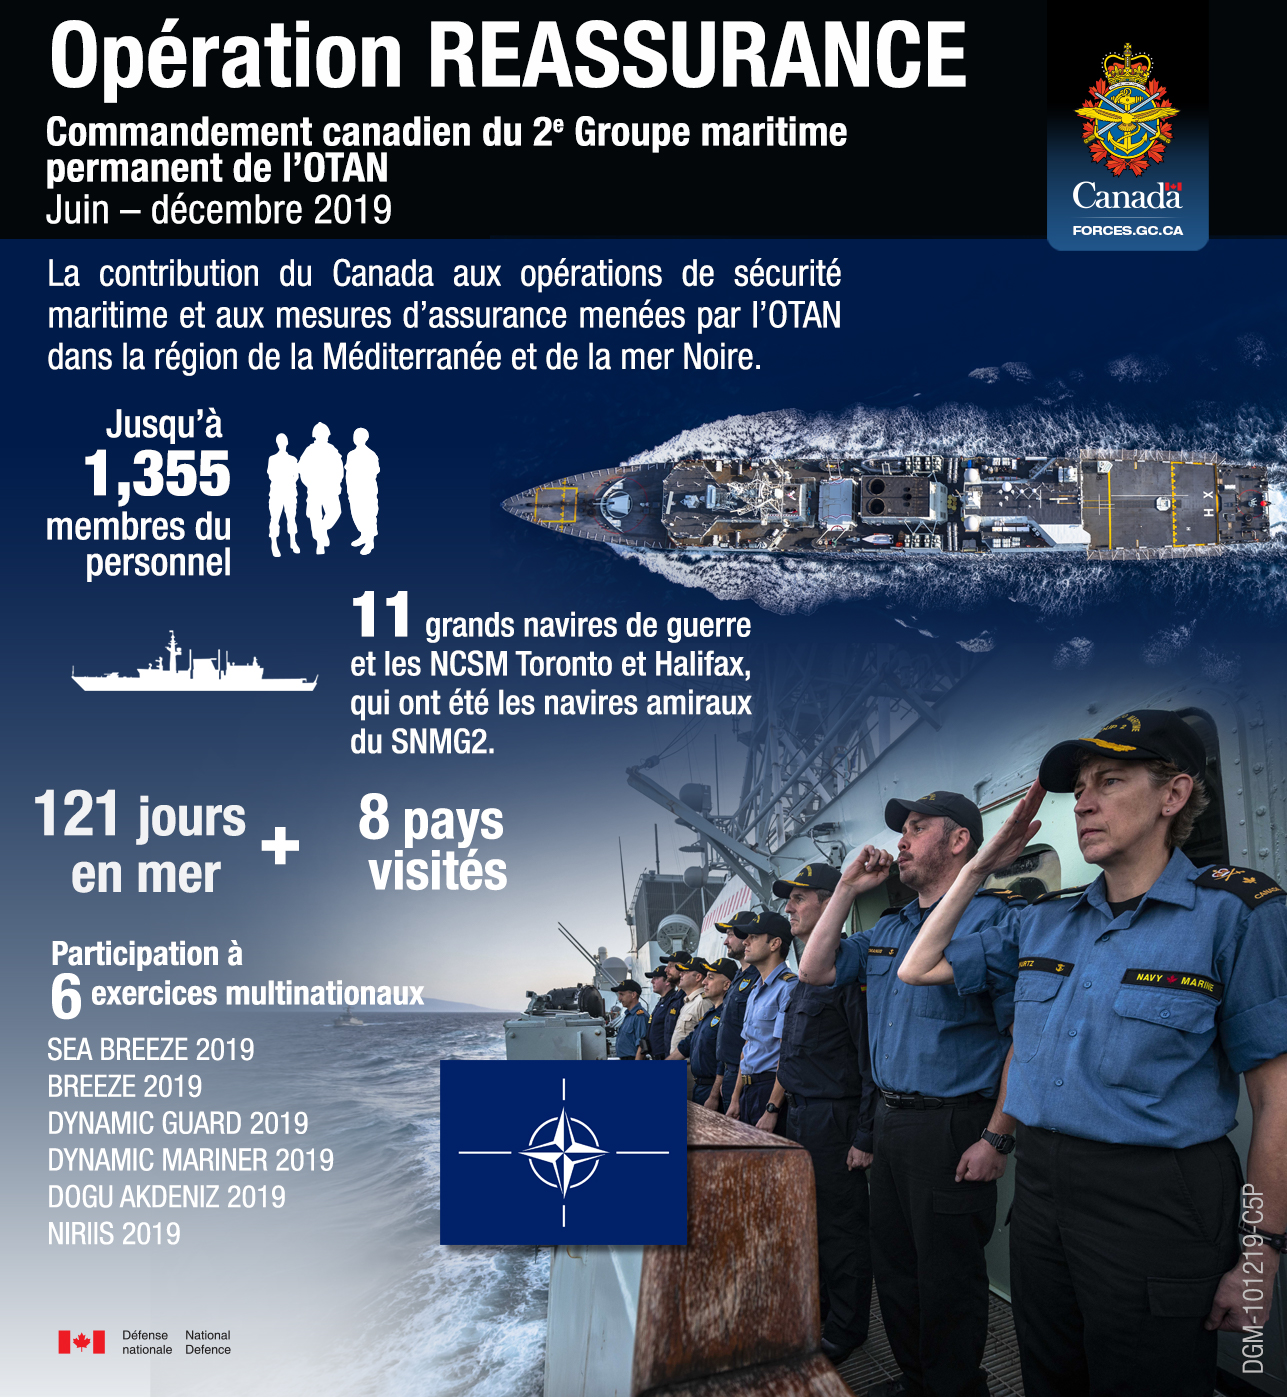 Un infographique à propos de la contribution du Canada aux opérations de sécurité maritime et aux mesures d'assurance menées par l'OTAN dans la région de la Méditerranée et de la mer Noire de juin au décembre 2019.